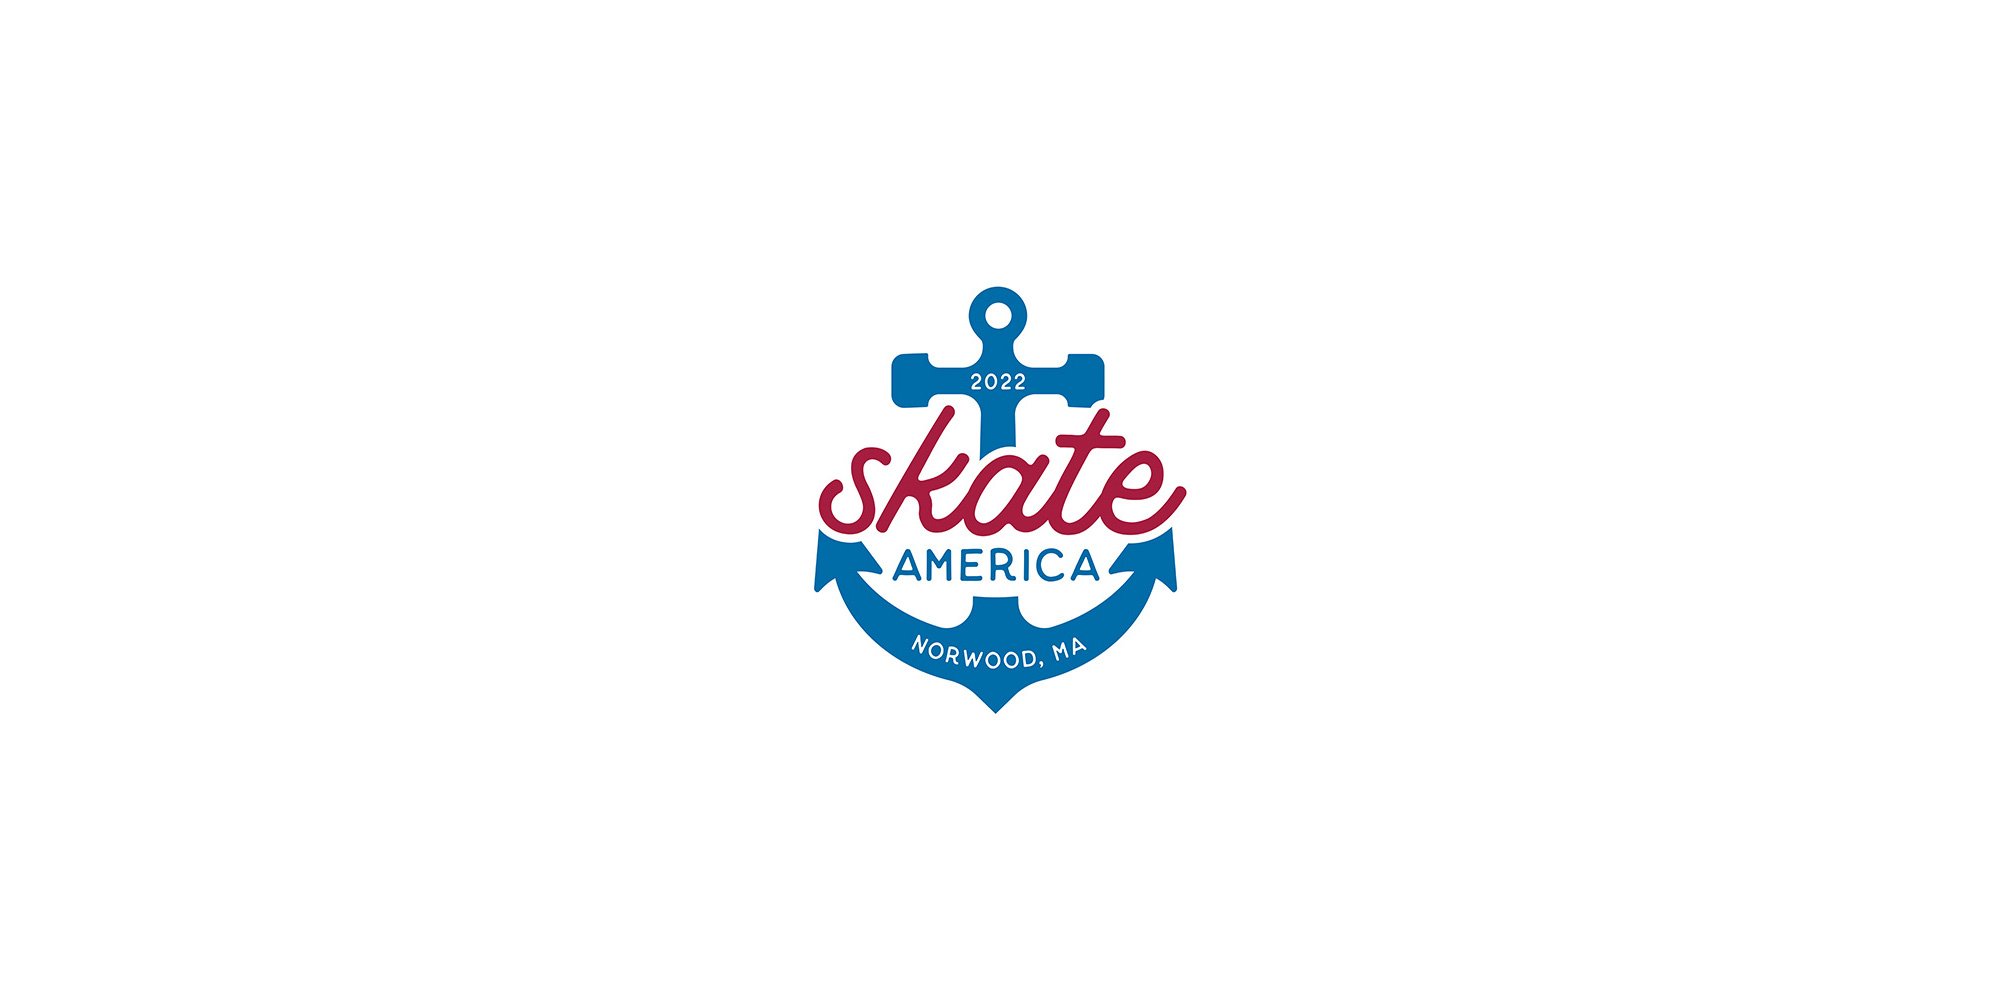 GP Skate America 2022 — In The Loop